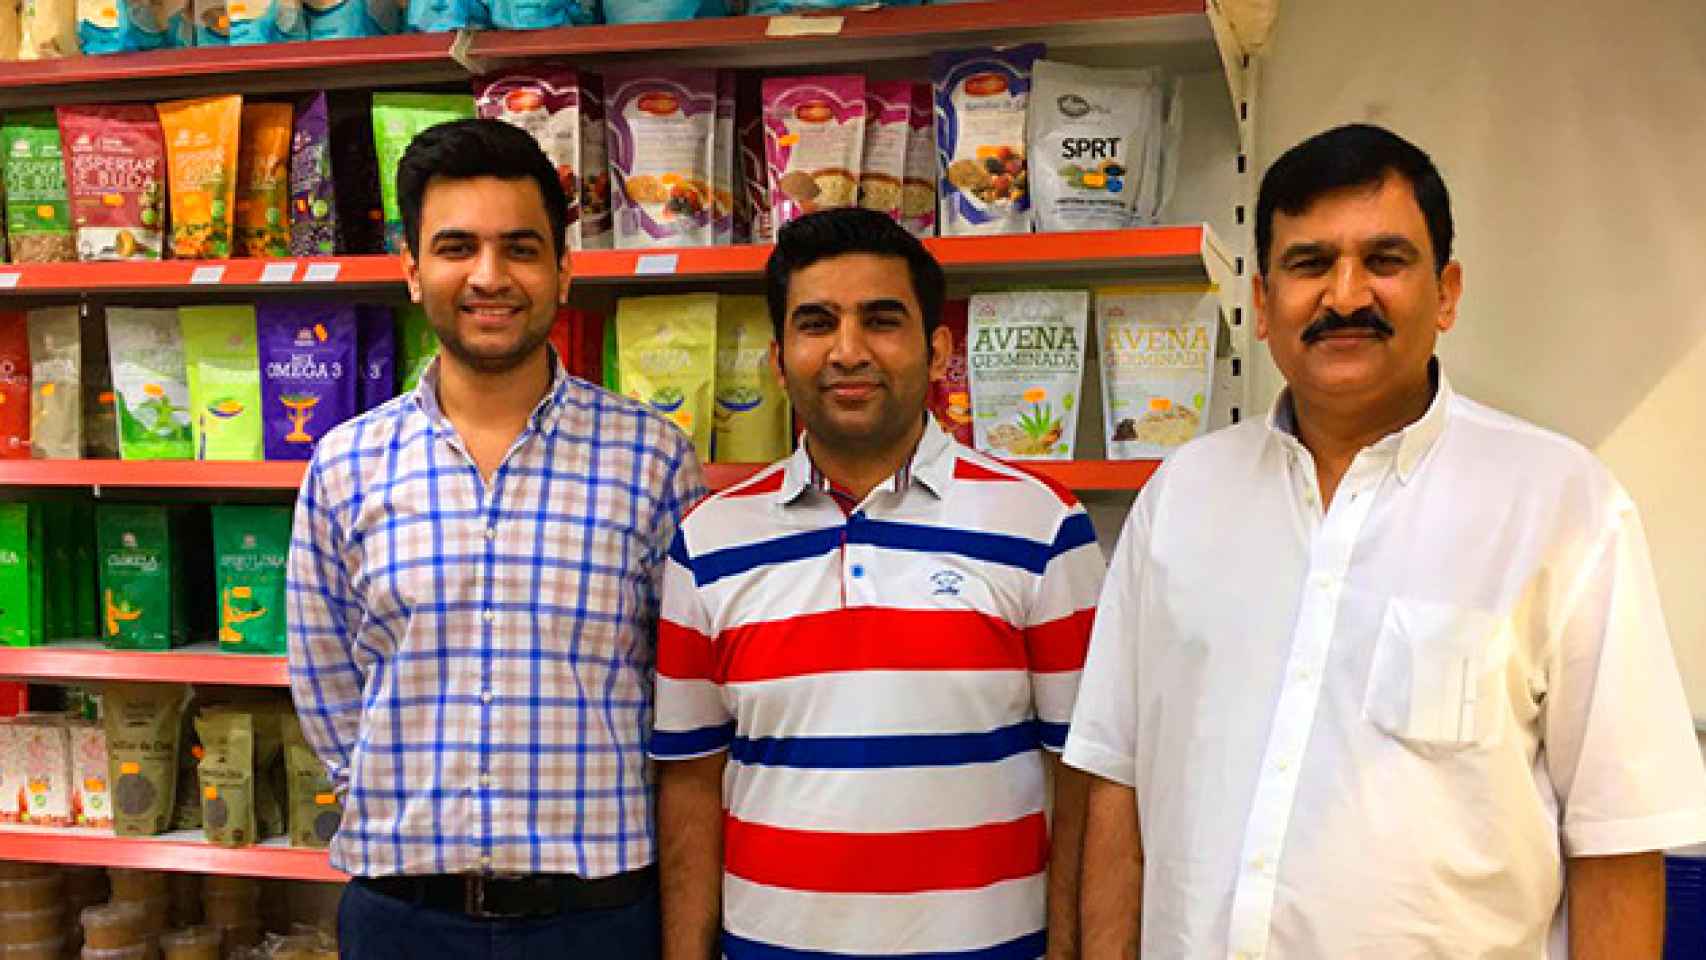 Mubarik Hussain (c) gestiona un supermercado gourmet en el barrio más 'hípster' de Barcelona, Sant Antoni, con la ayuda de sus hermanos Haroon (d) y Mafooz (i) / CG